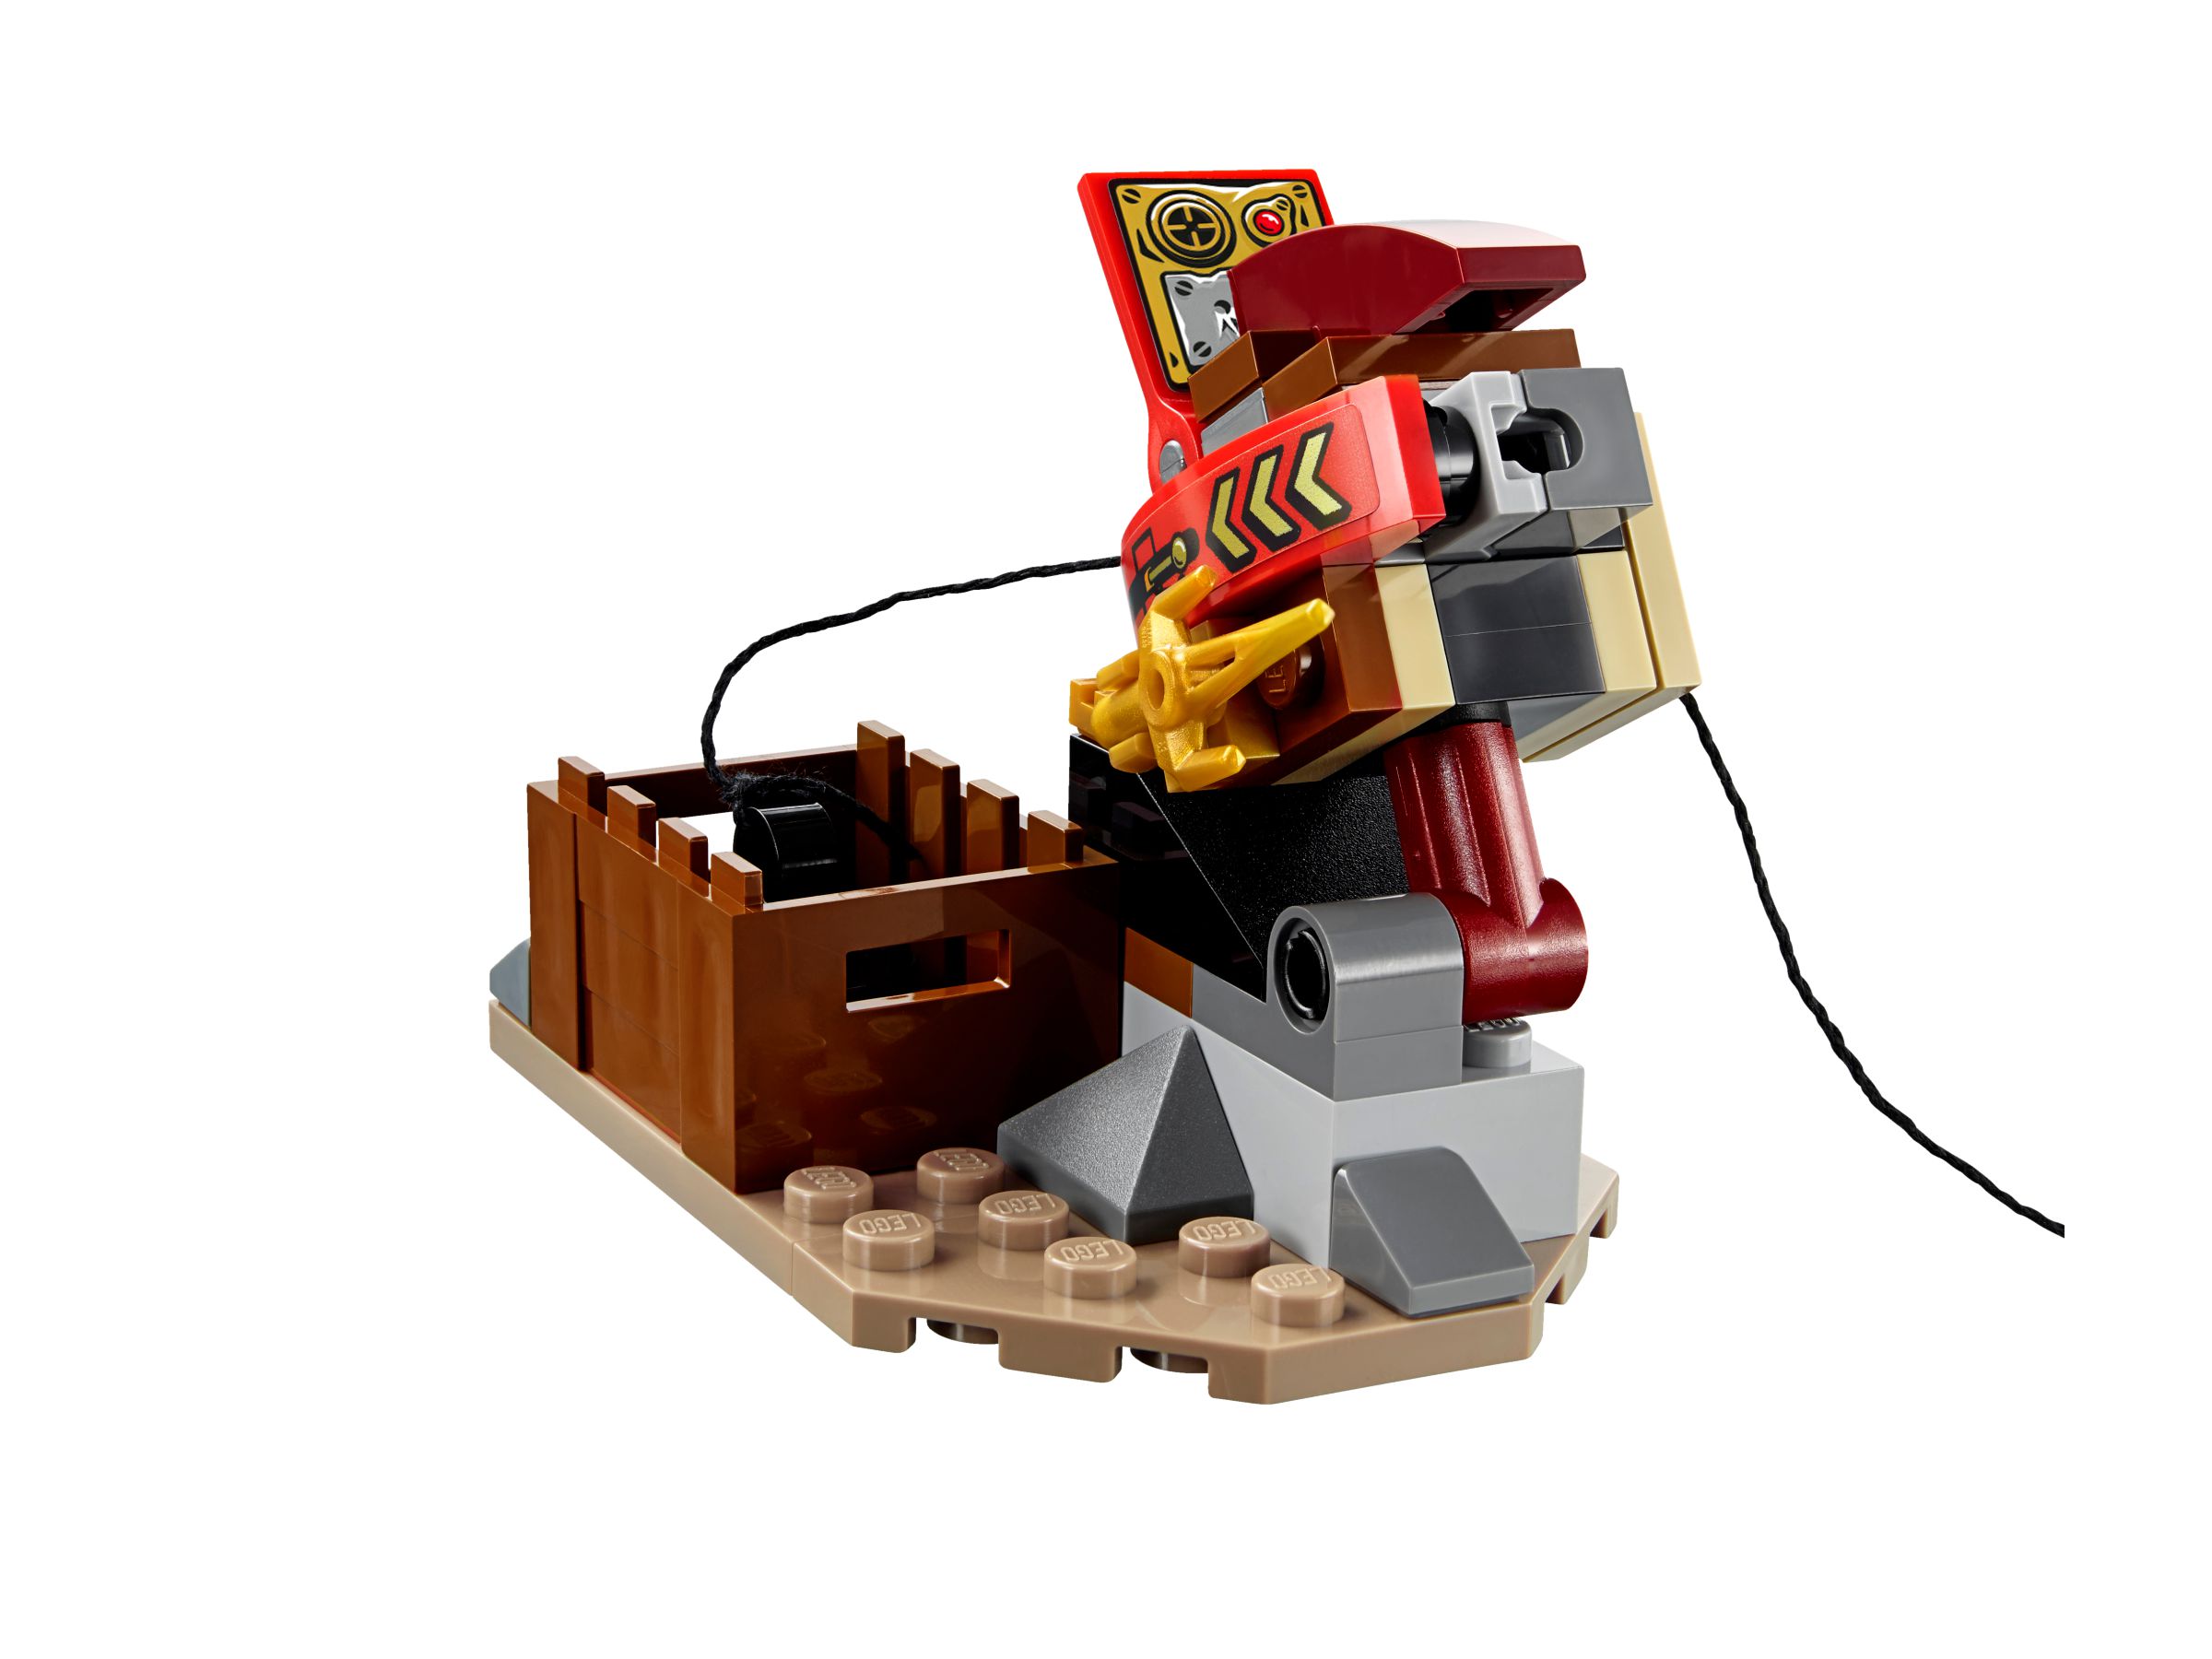 LEGO Ninjago 70737 Titanroboter gegen Mech-enstein LEGO_70737_alt4.jpg